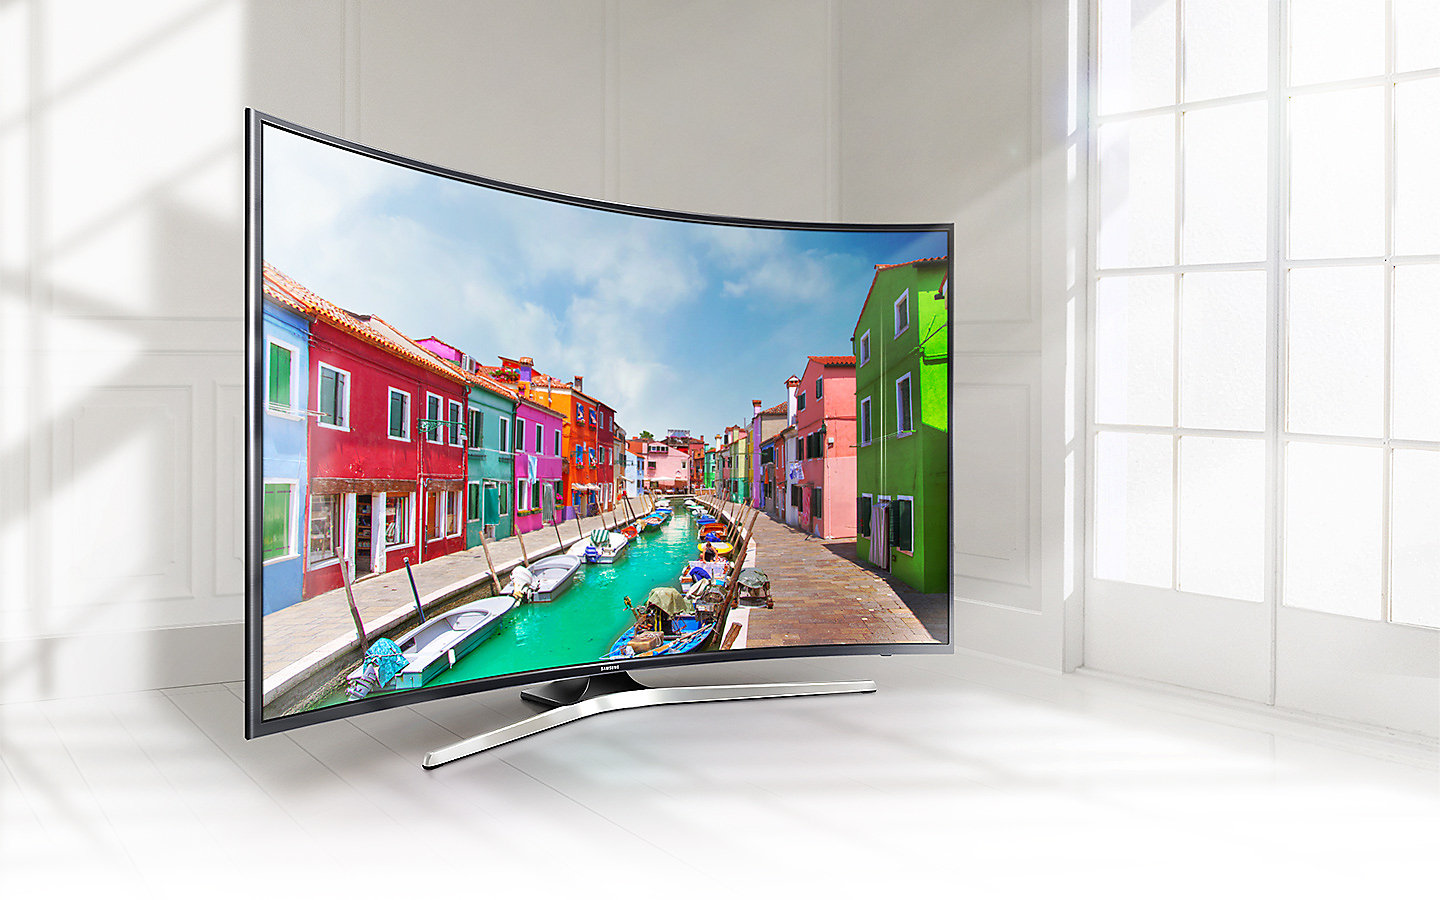 Купить телевизор смарт минск. Samsung ue49mu6300u. Телевизор самсунг ue49 изогнутый. Samsung Curved UHD TV mu6500 49.